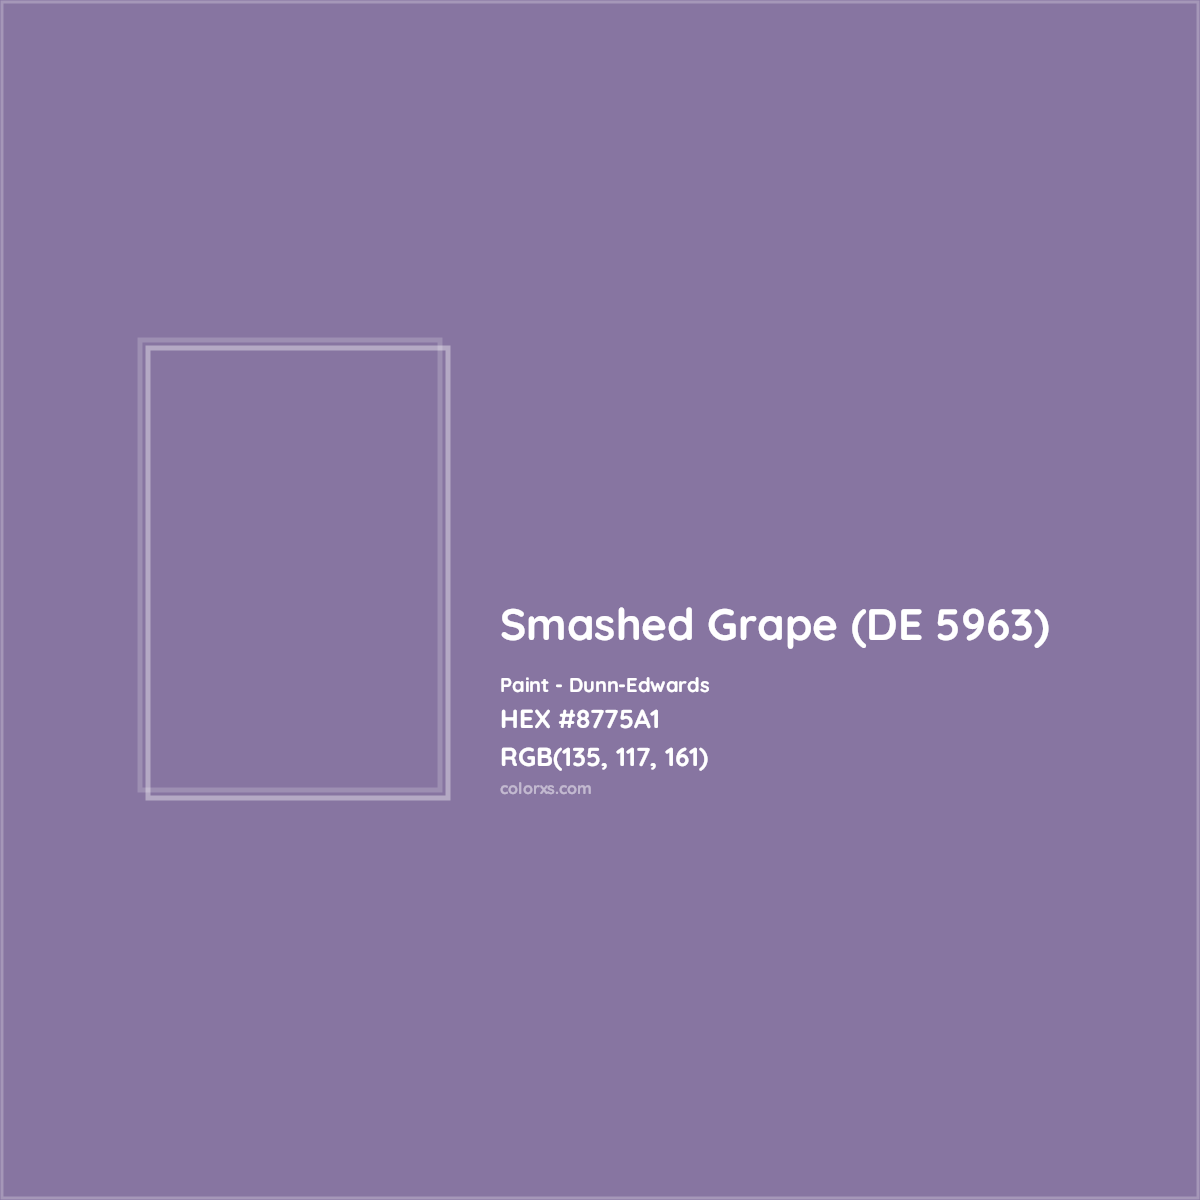 HEX #8775A1 Smashed Grape (DE 5963) Paint Dunn-Edwards - Color Code